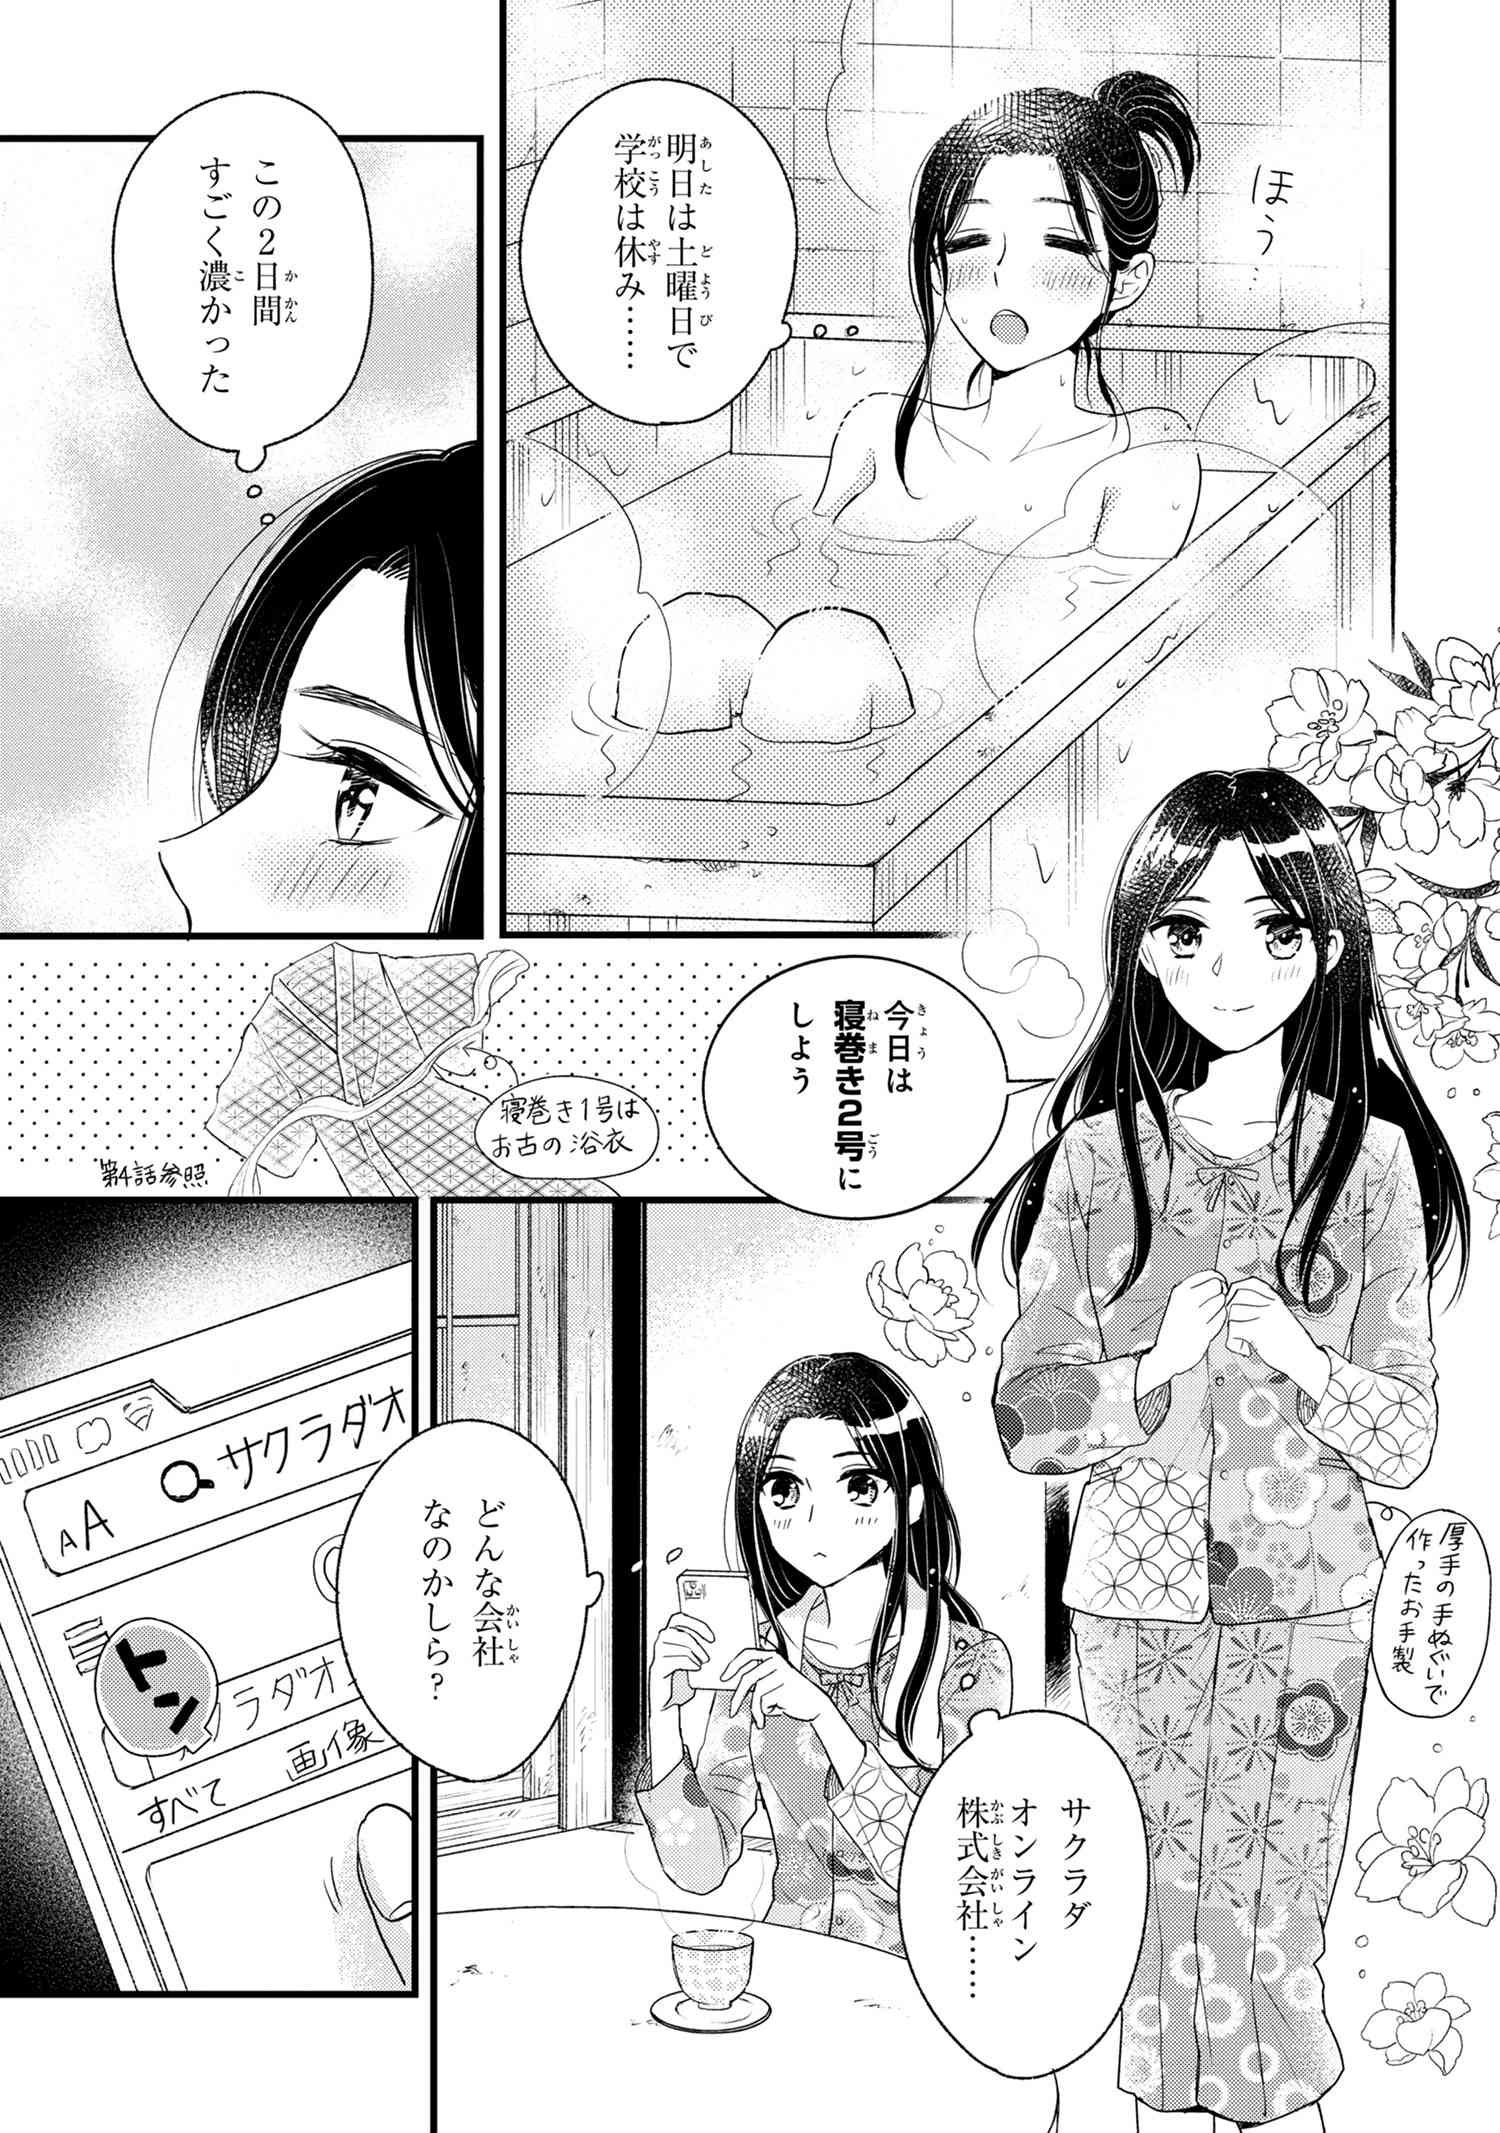 Reiko no Fuugi Akuyaku Reijou to Yobarete imasu ga, tada no Binbou Musume desu - Chapter 6-3 - Page 1